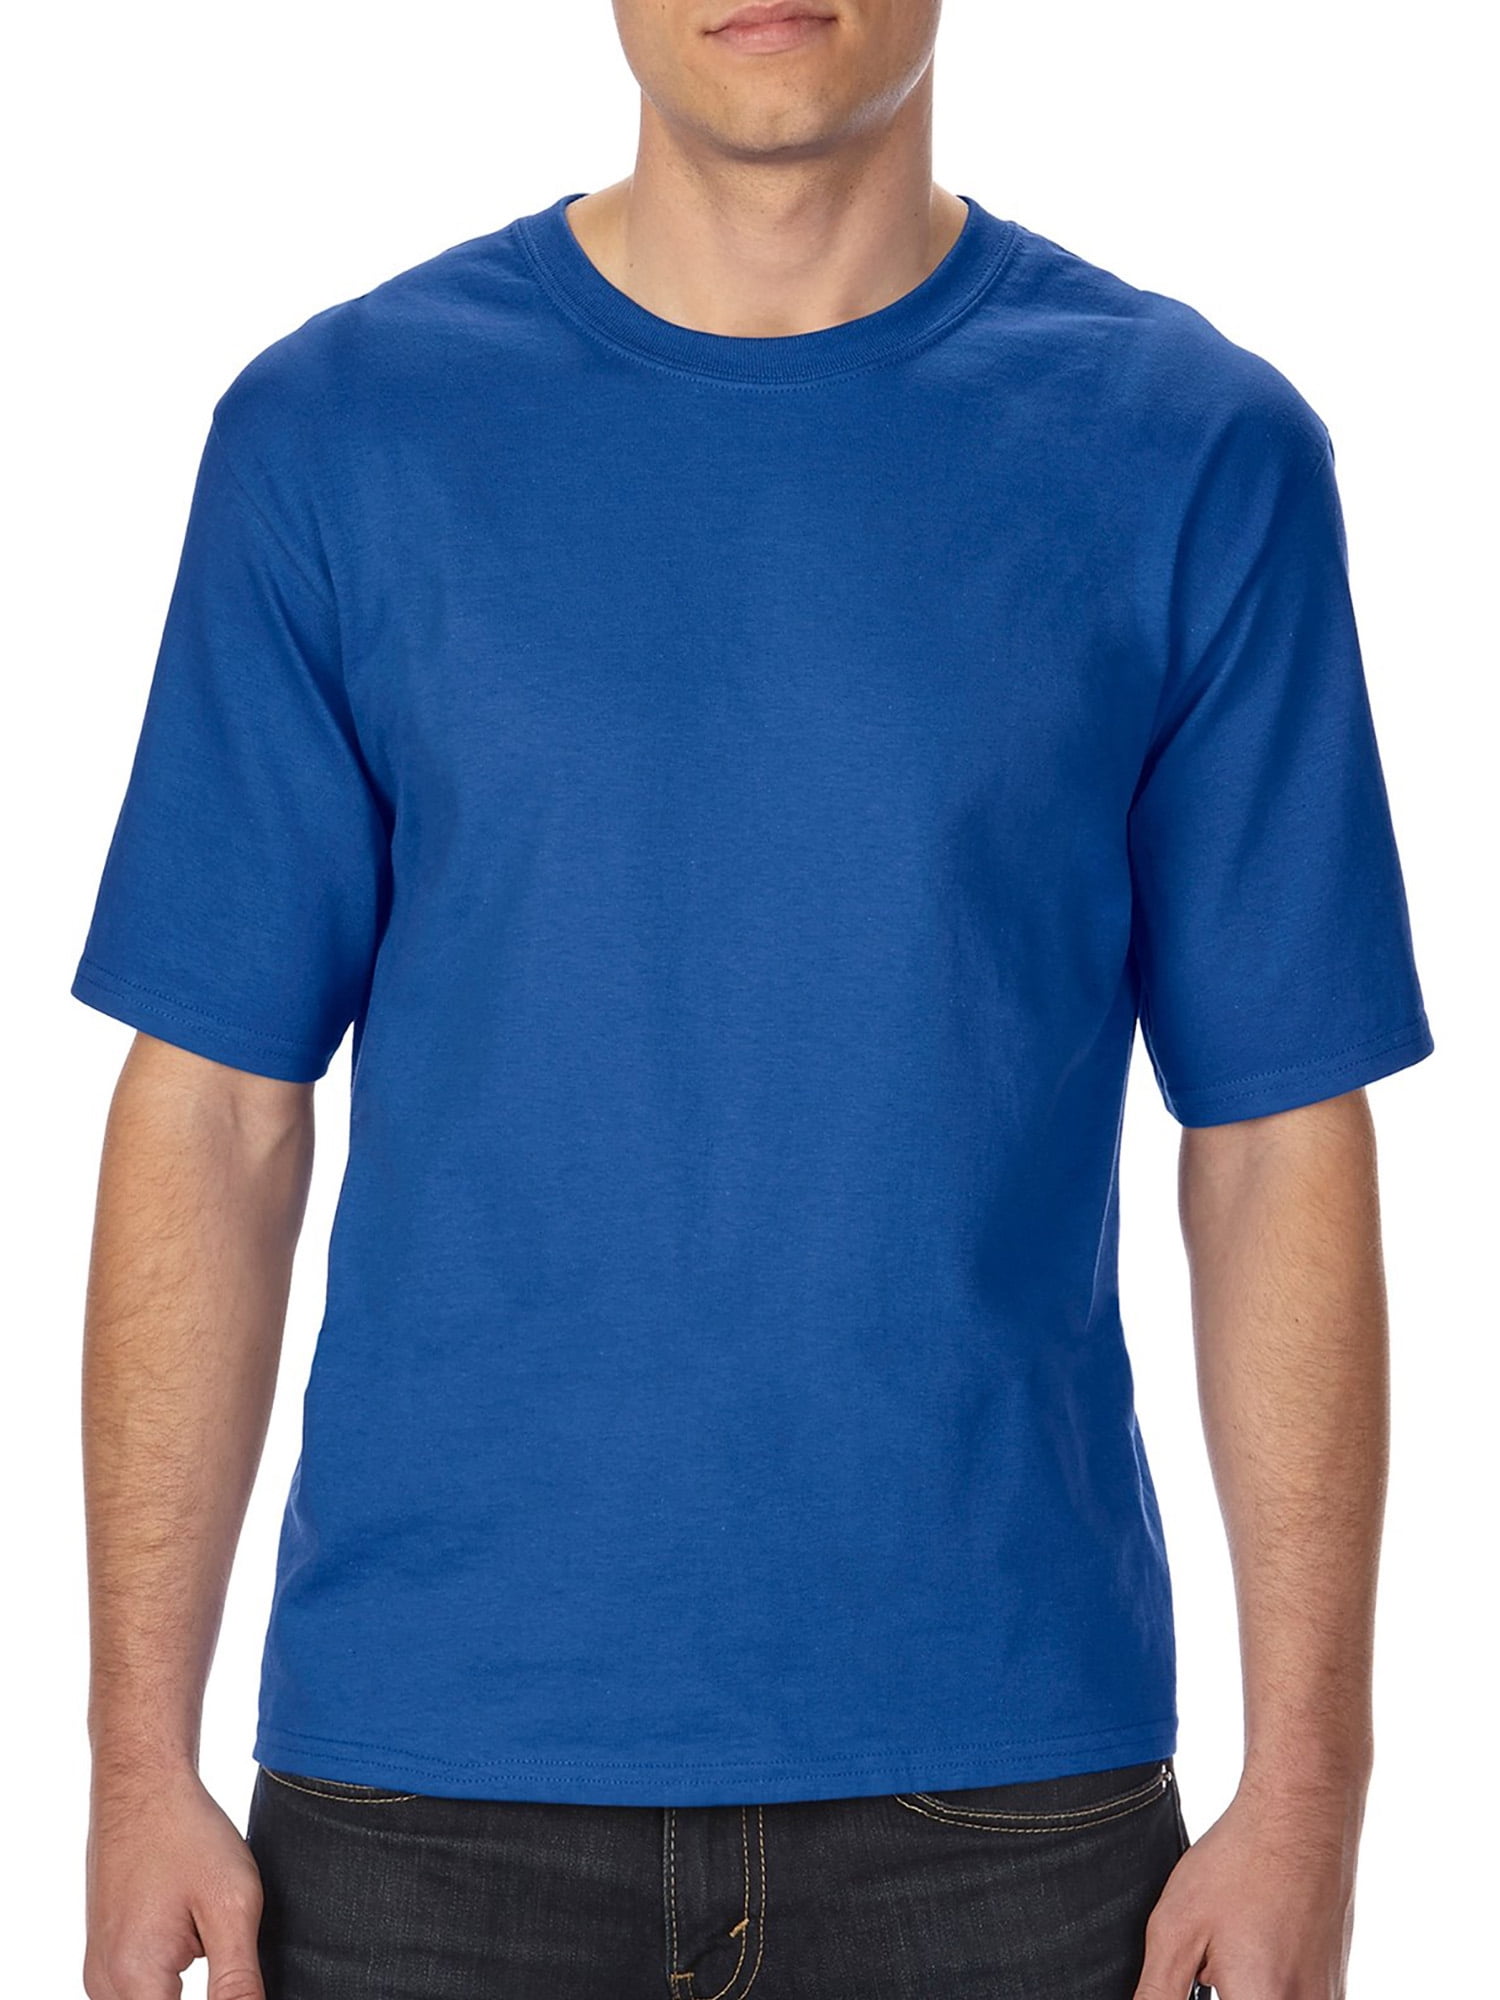 Gildan Big and tall men's classic short sleeve t-shirt - Walmart.com